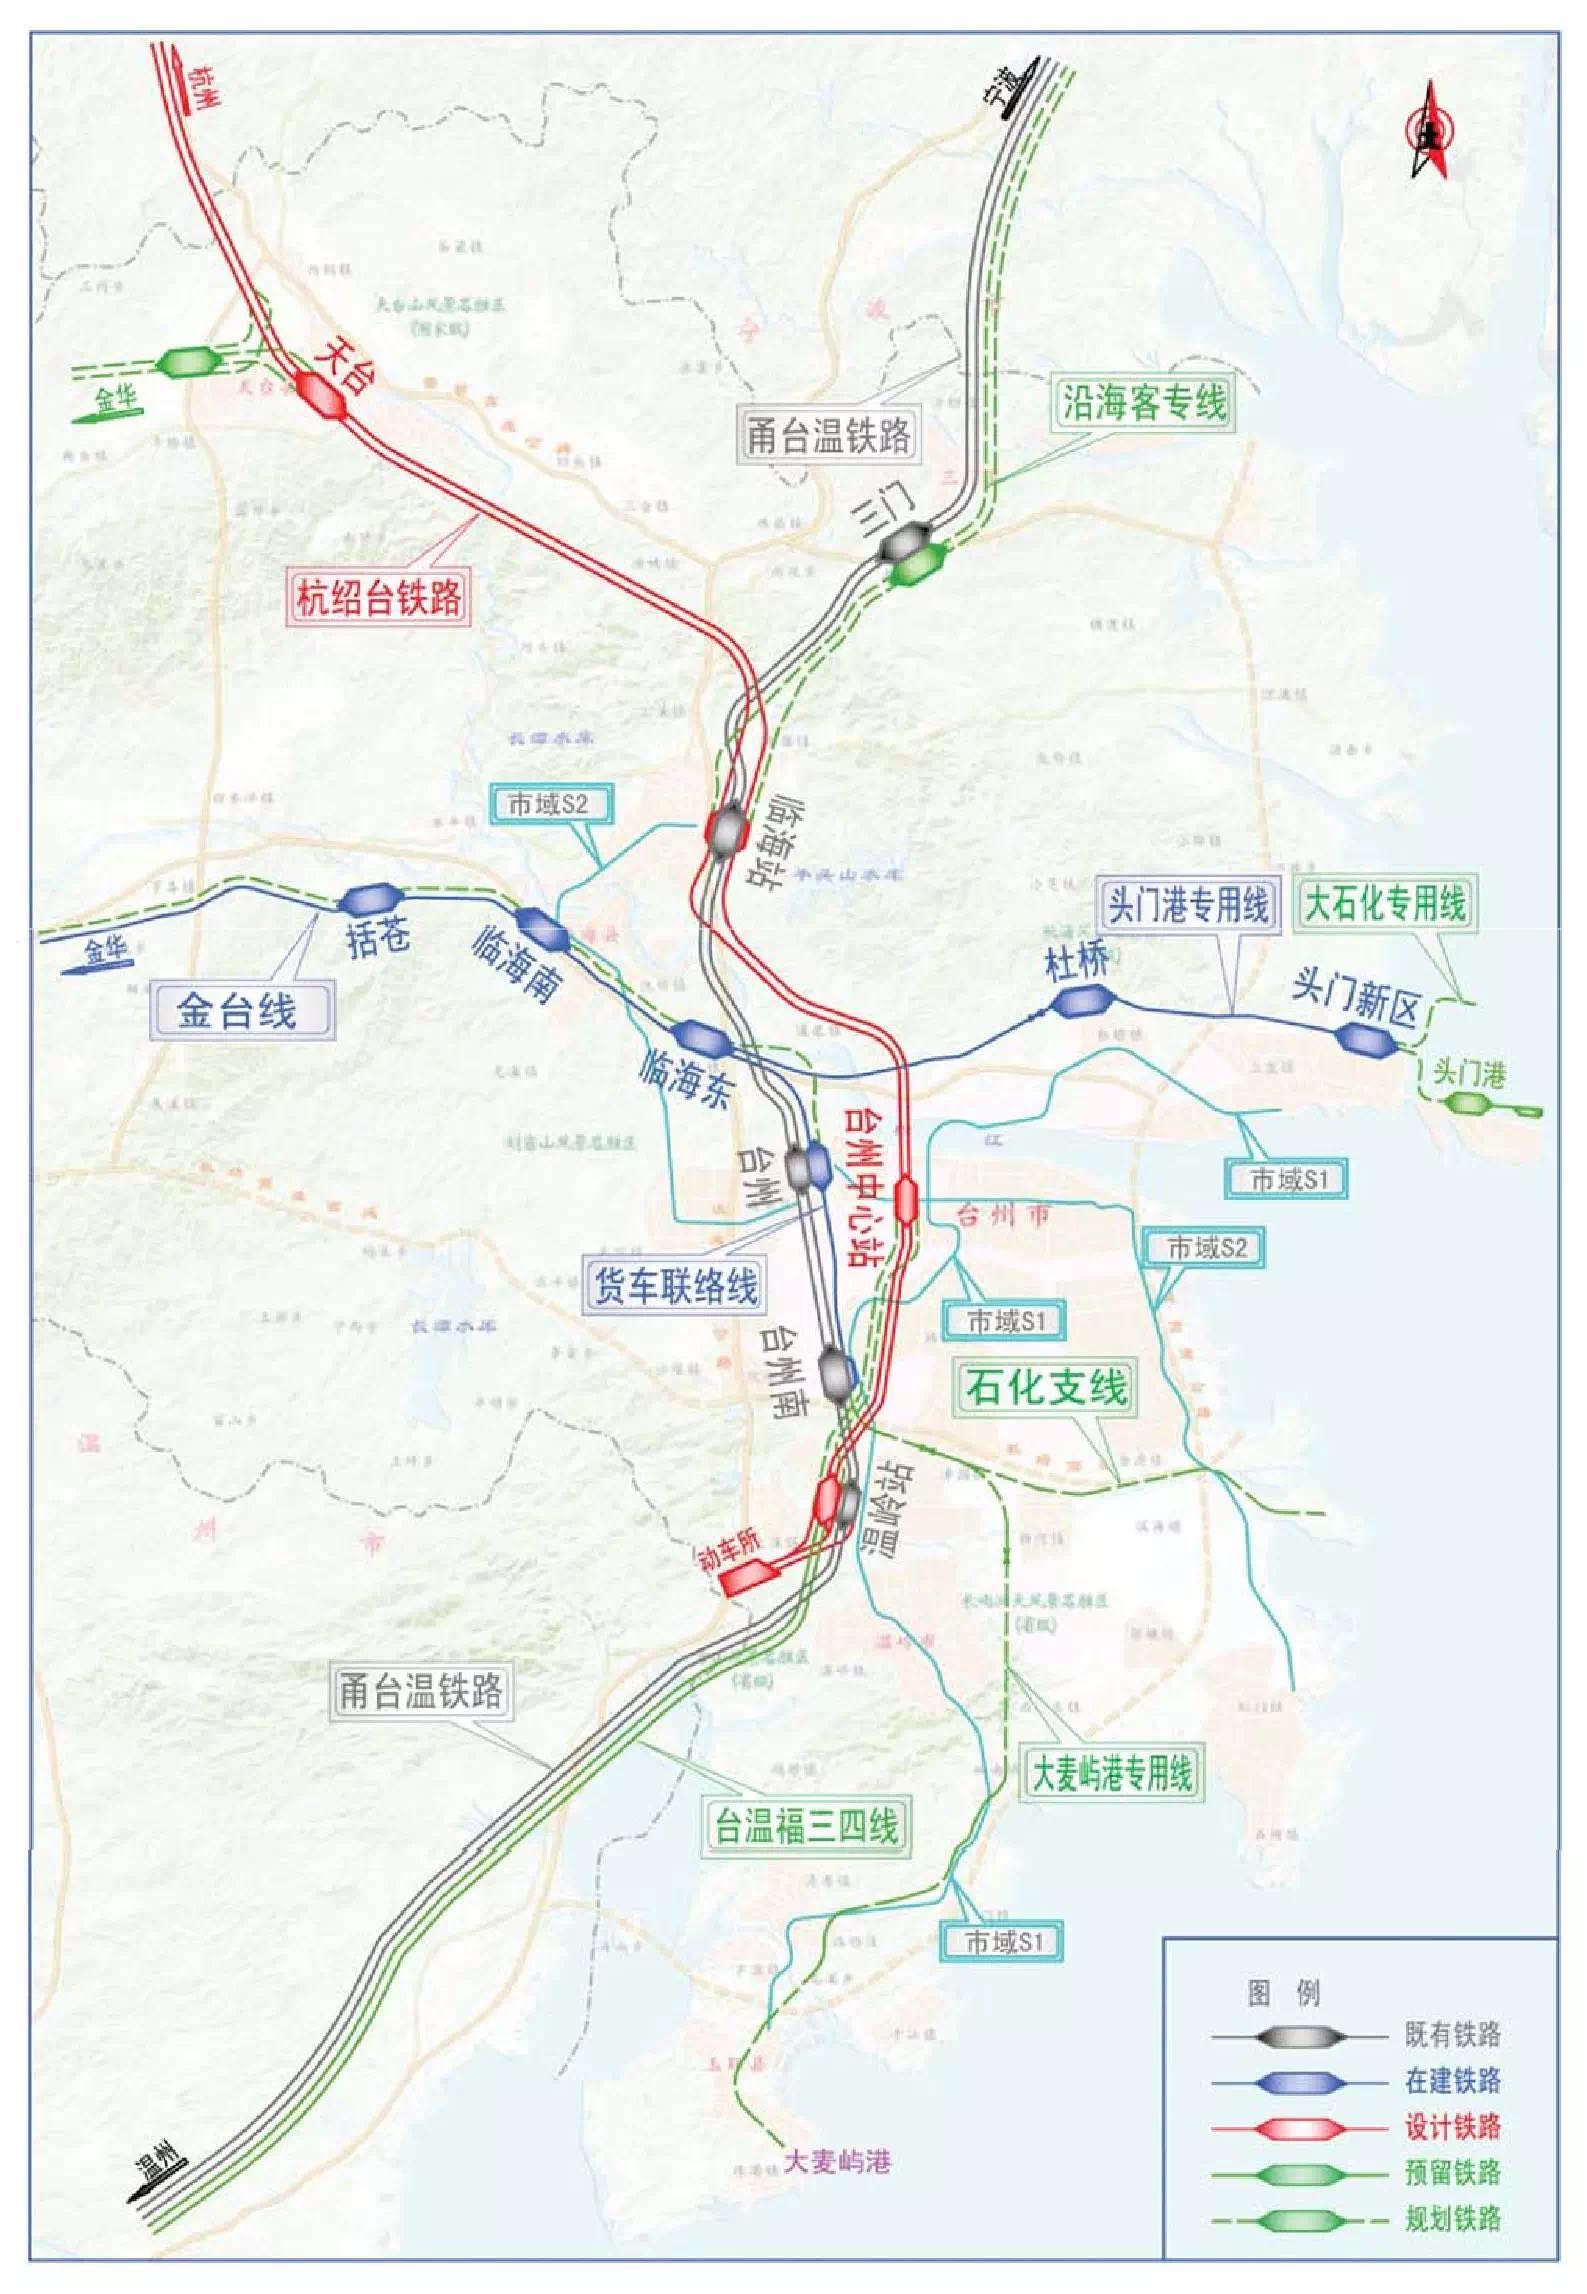 复星(00656)牵头民企签约462亿杭绍台高铁项目